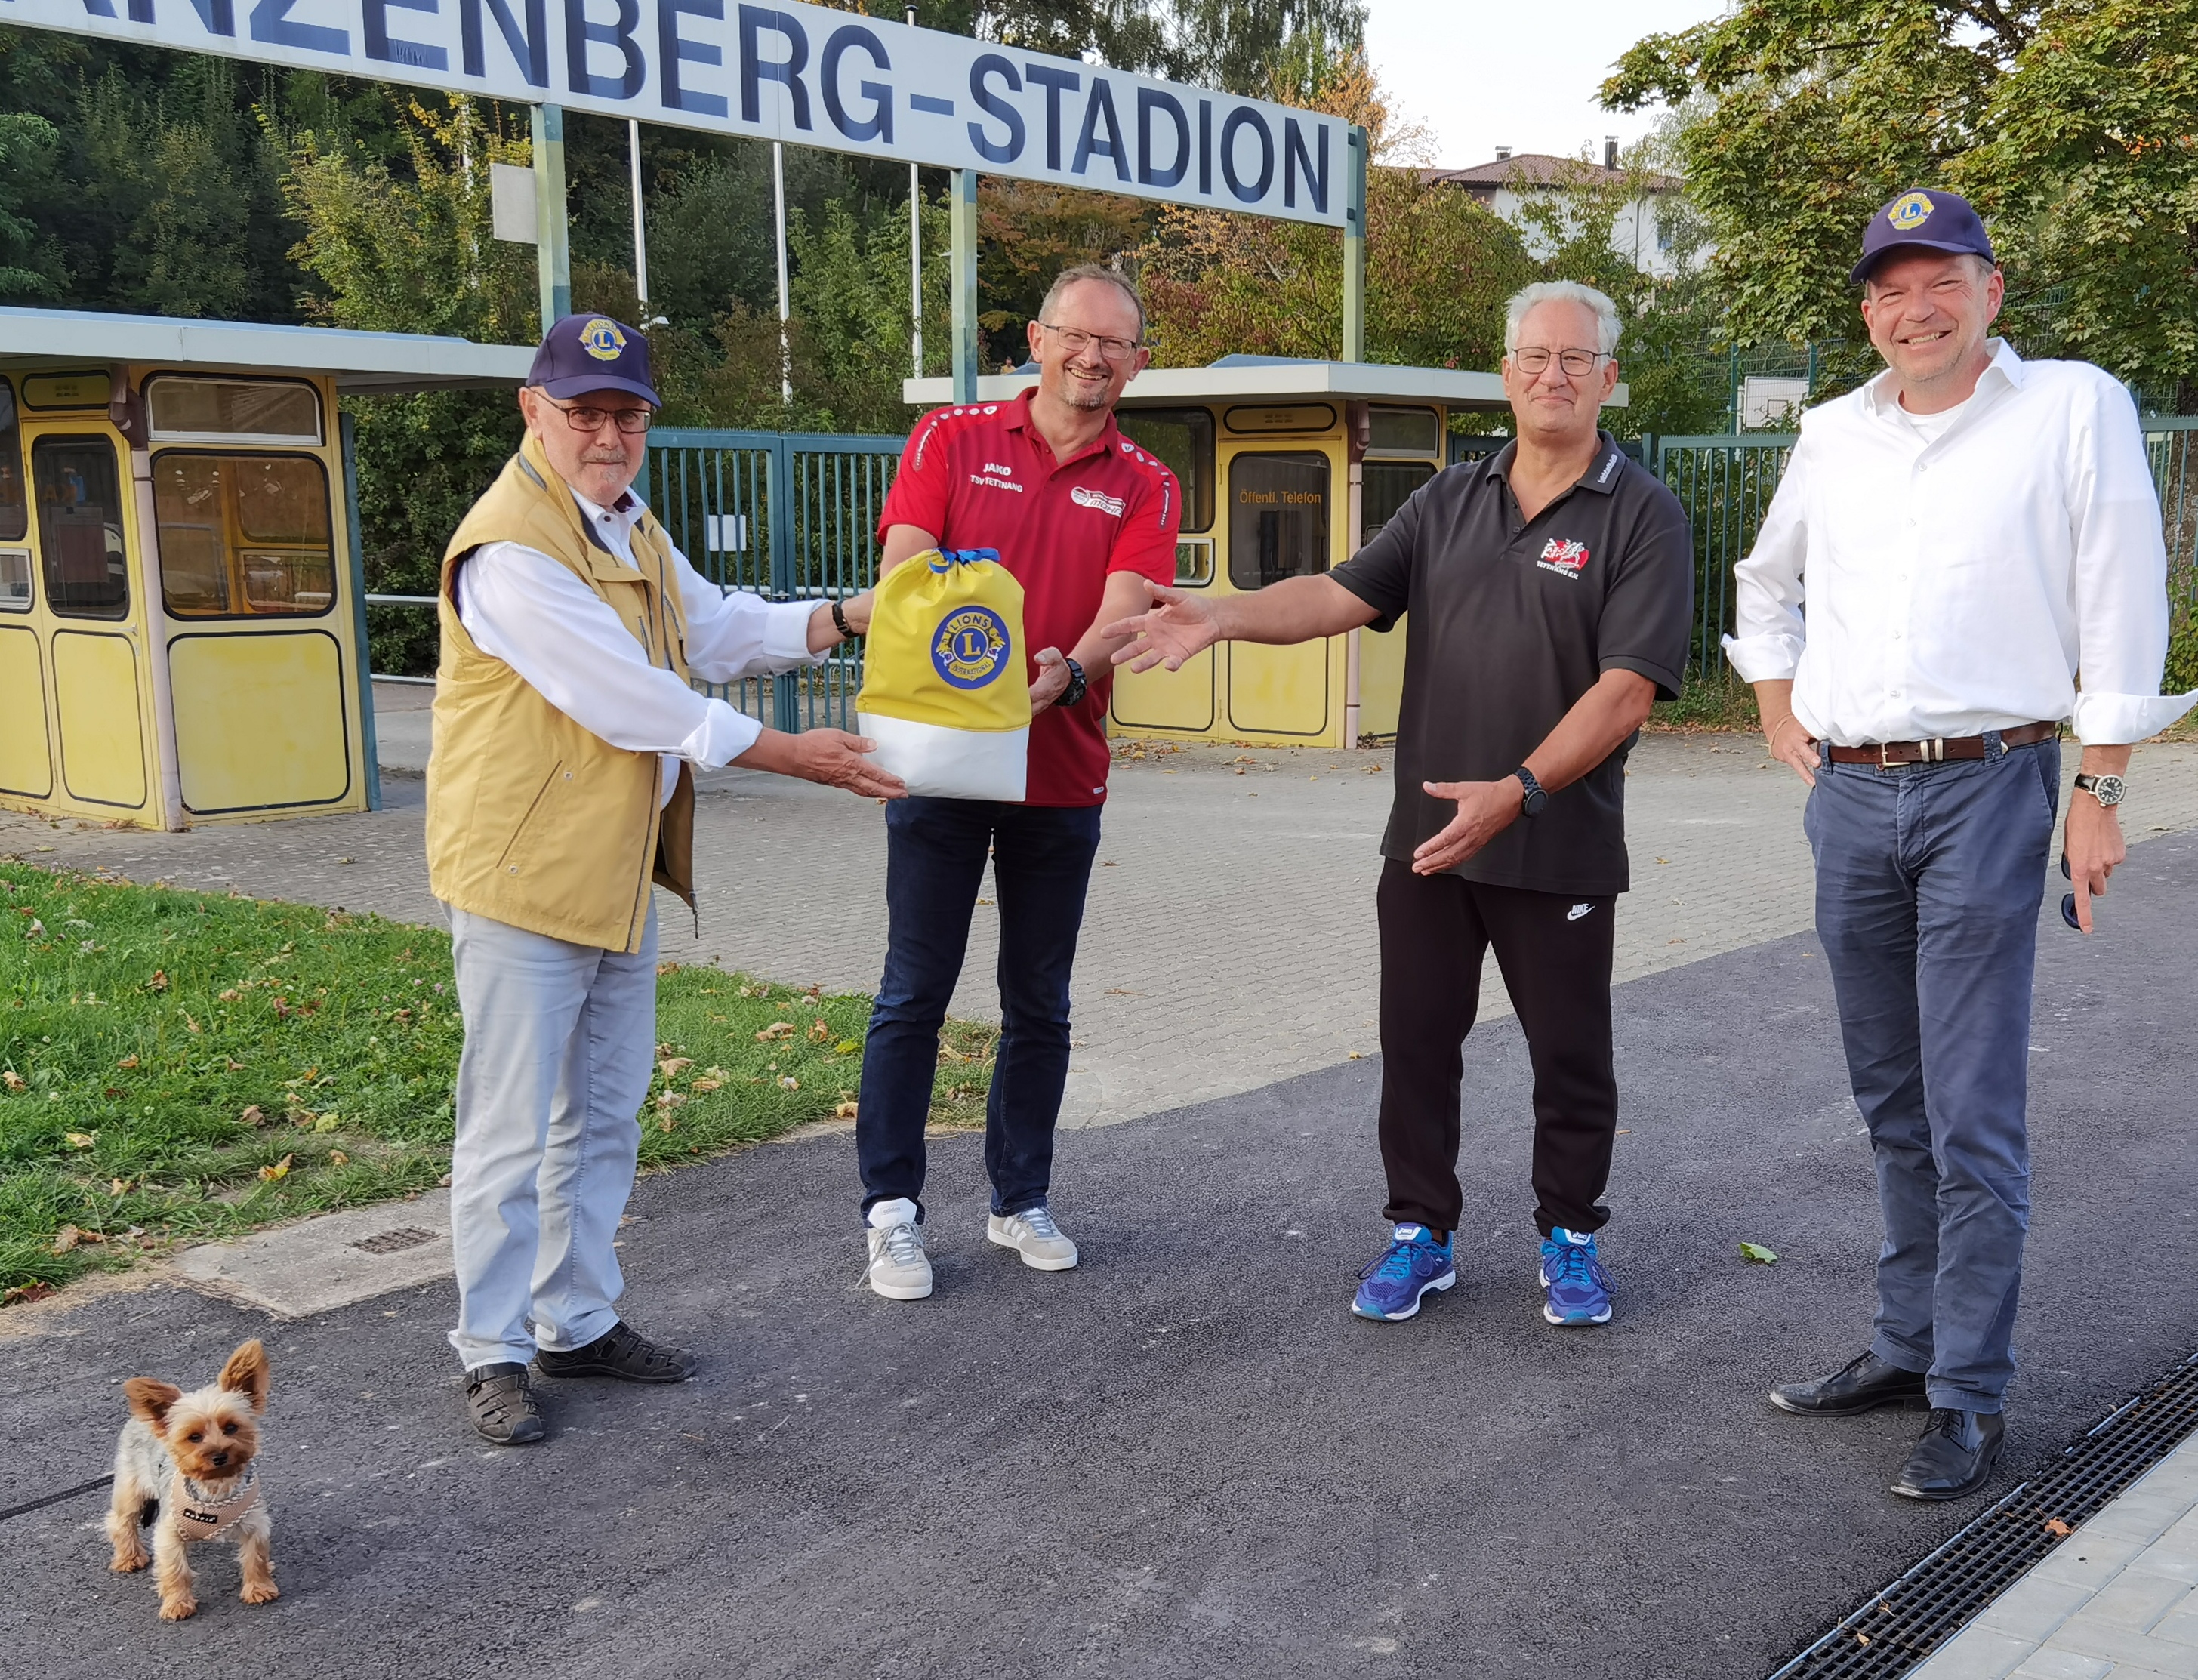 Bild zeigt die symbolische Übergabe der Spende mit dem Lions-Geldsäckchen durch Eugen Segelbacher (links) und Rainer Gutbrod (rechts) an Herrn Klaus Schwärzler (Fußball) und an Herrn Edwin Bochtler (Leichtathletik).